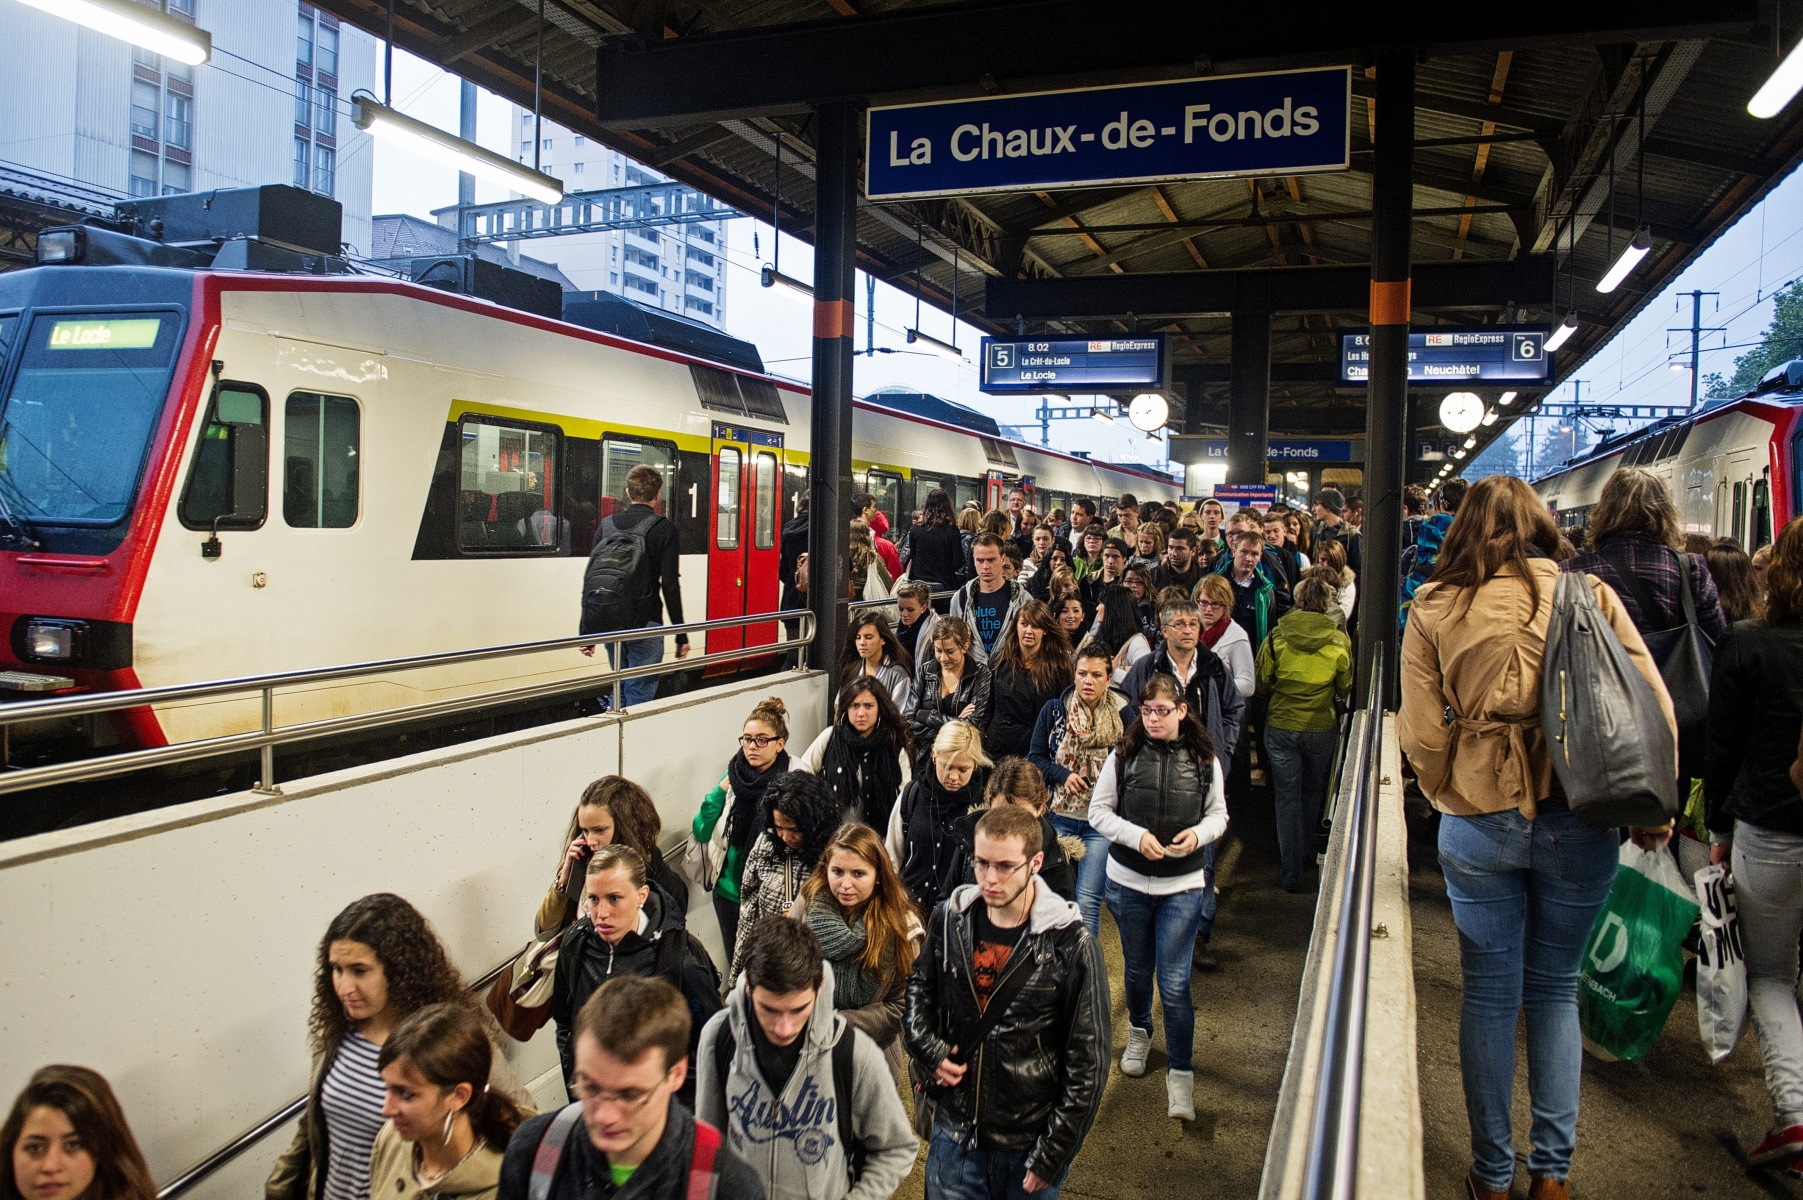 La foule des pendulaires en gare de La Chaux-de-Fonds.